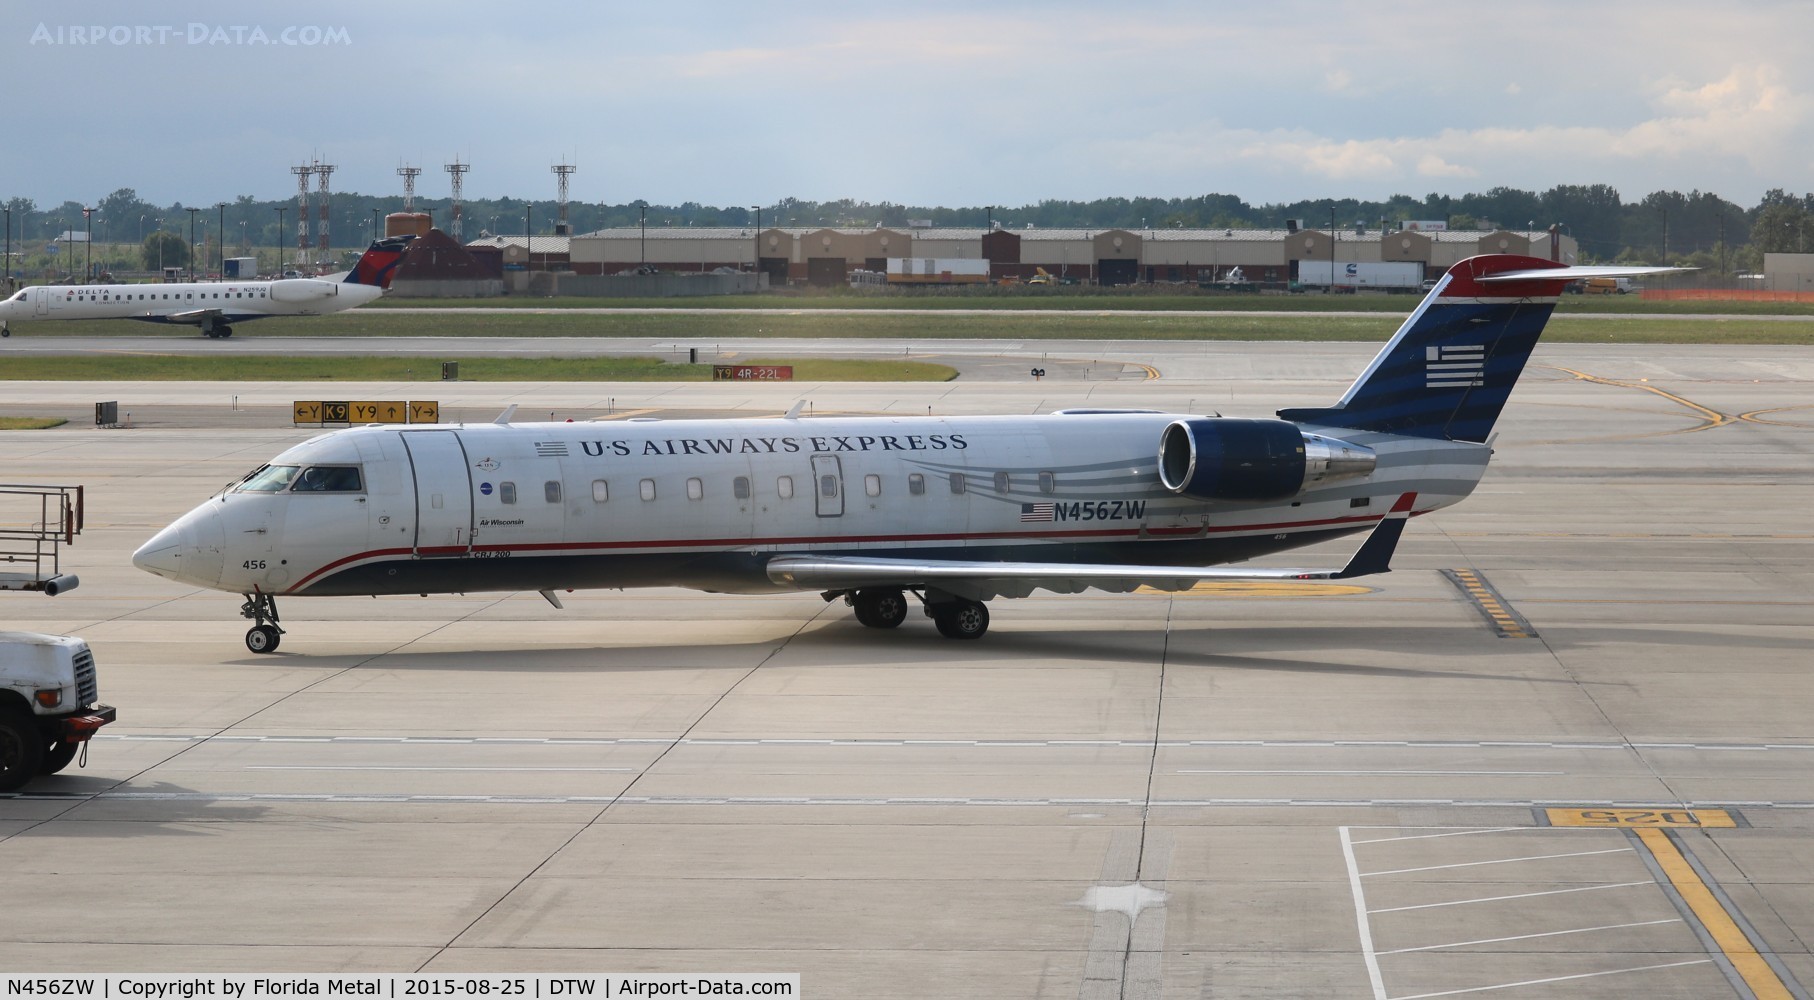 N456ZW, 2003 Bombardier CRJ-200LR (CL-600-2B19) C/N 7849, US Airways